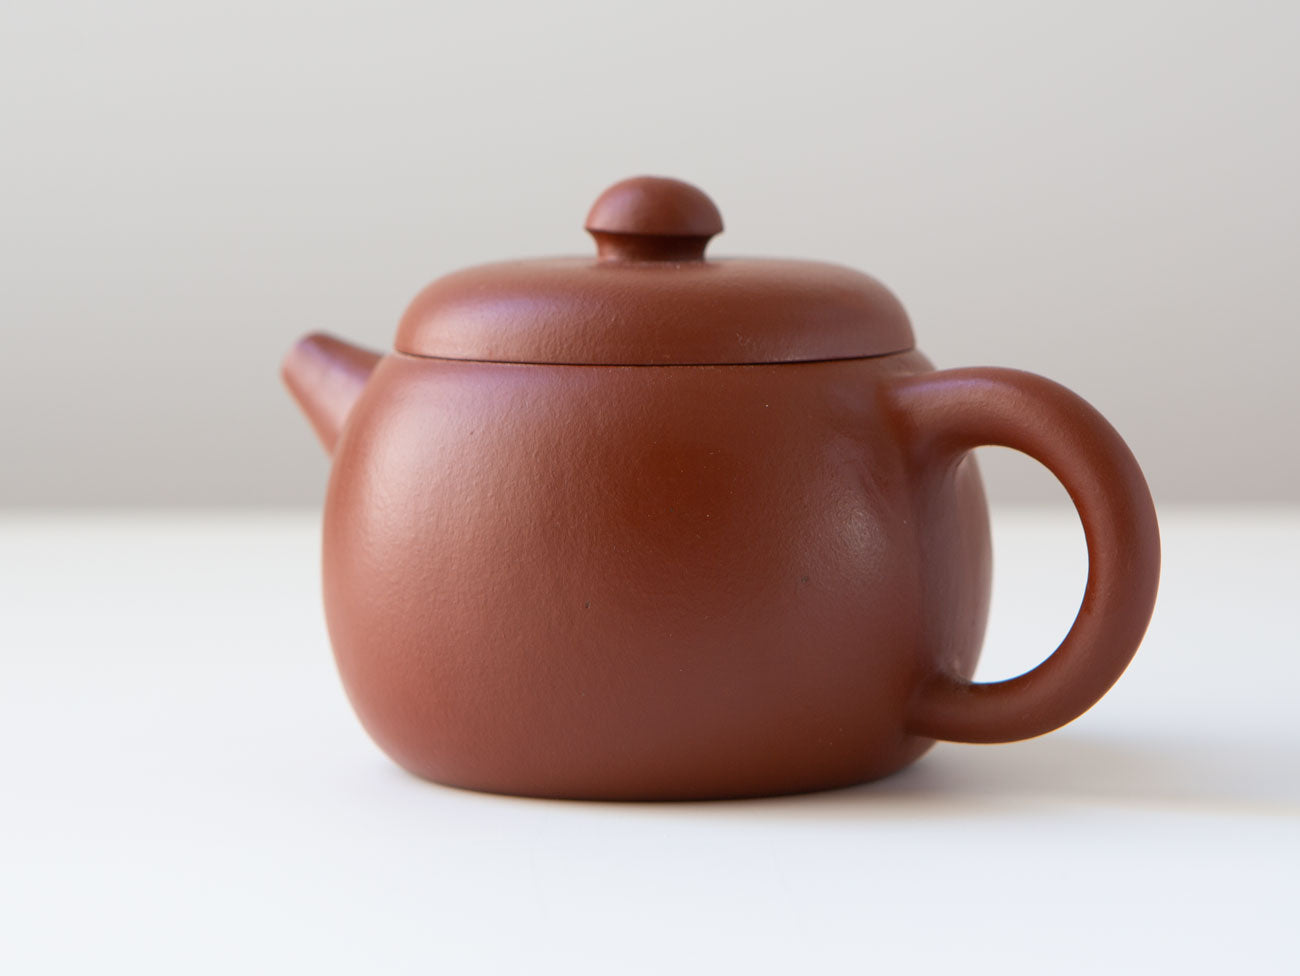 A little red zisha teapot.